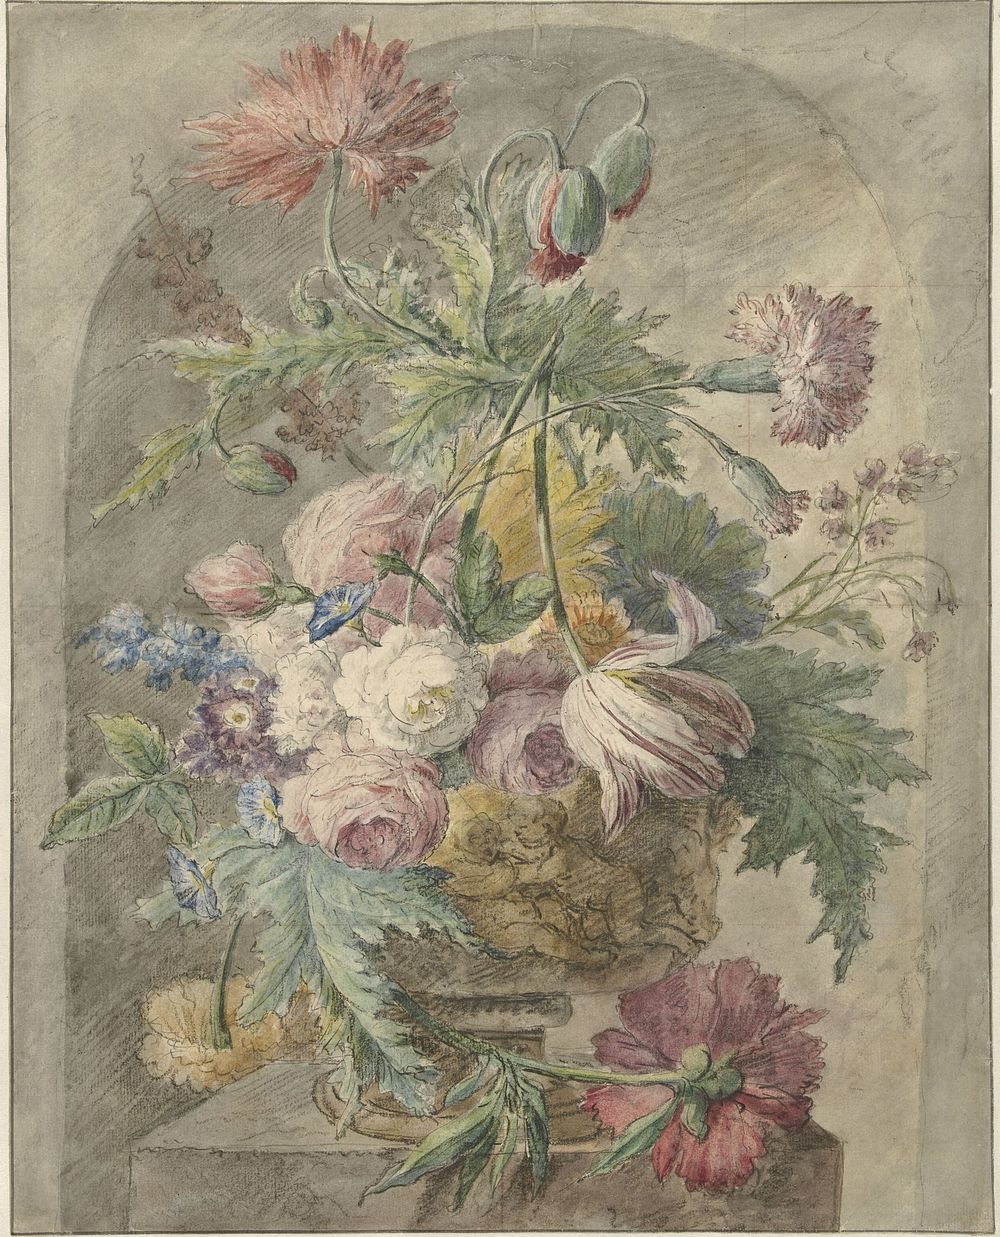 Bloemen in een vaas (1700 - 1800) by anonymous and Jan van Huysum